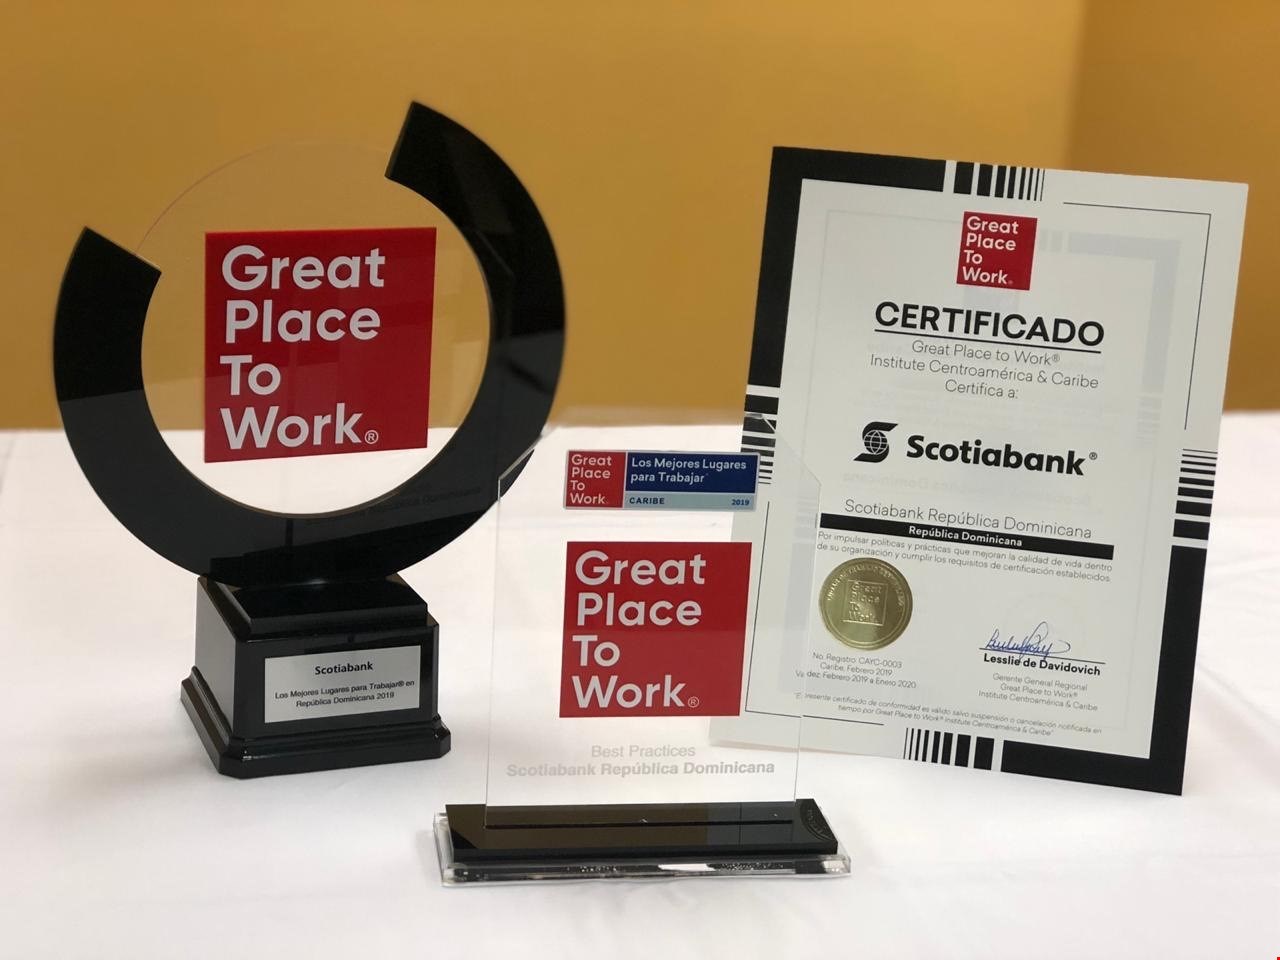 Scotiabank RD avanza al tercer lugar en el ranking de “Great Place to Work”